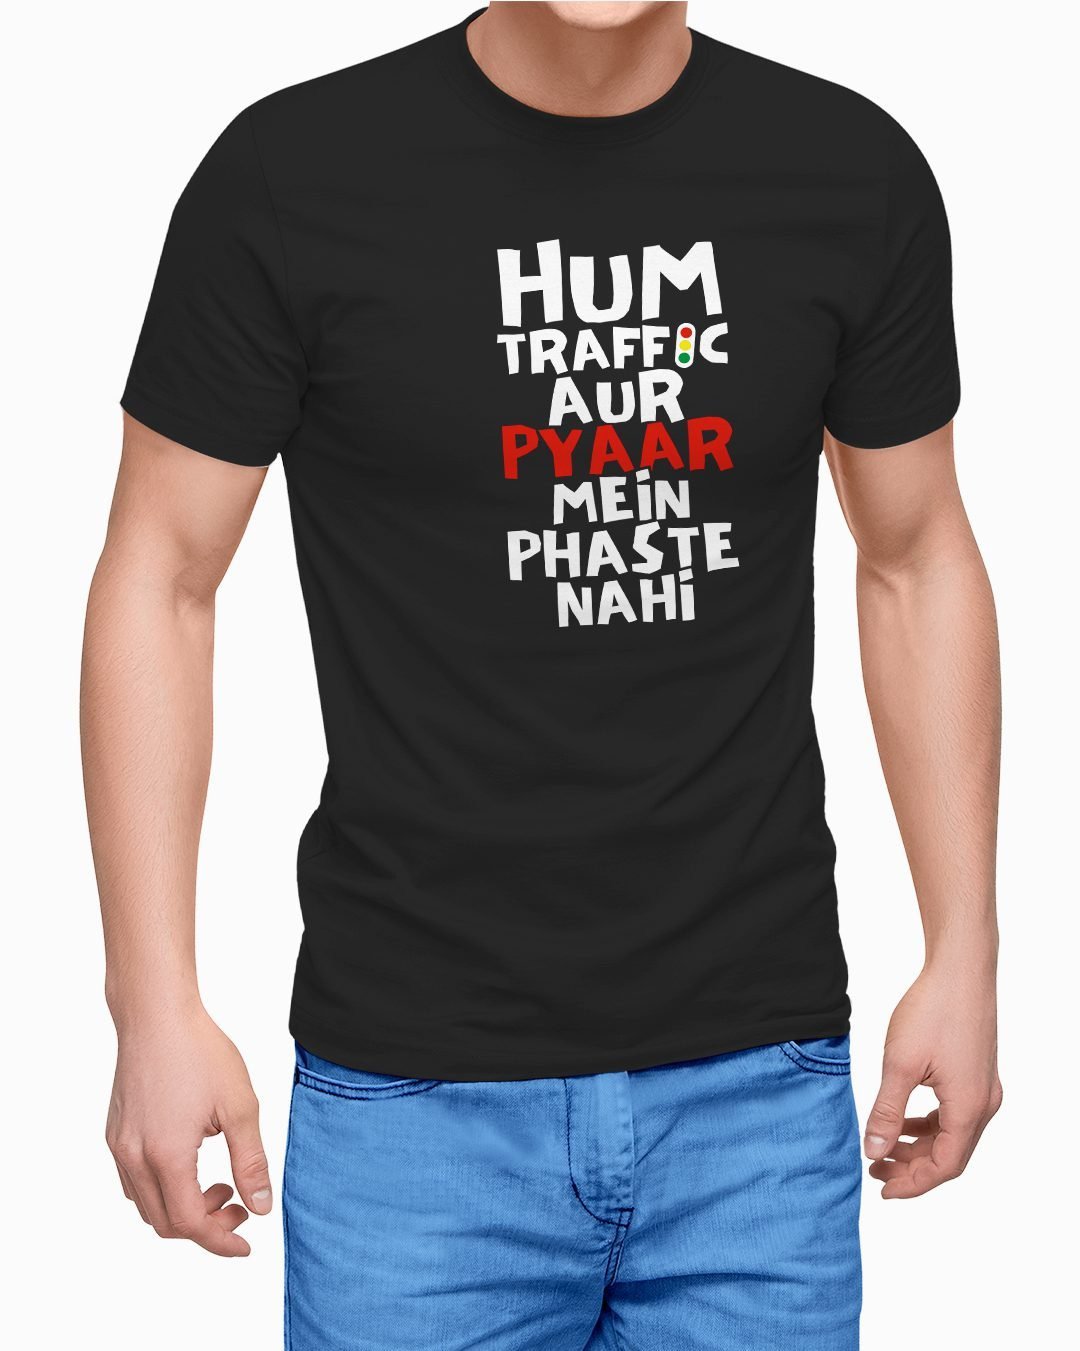 Hum Traffic Aur Pyaar Me Phaste Nahi Regular cotton T-Shirts